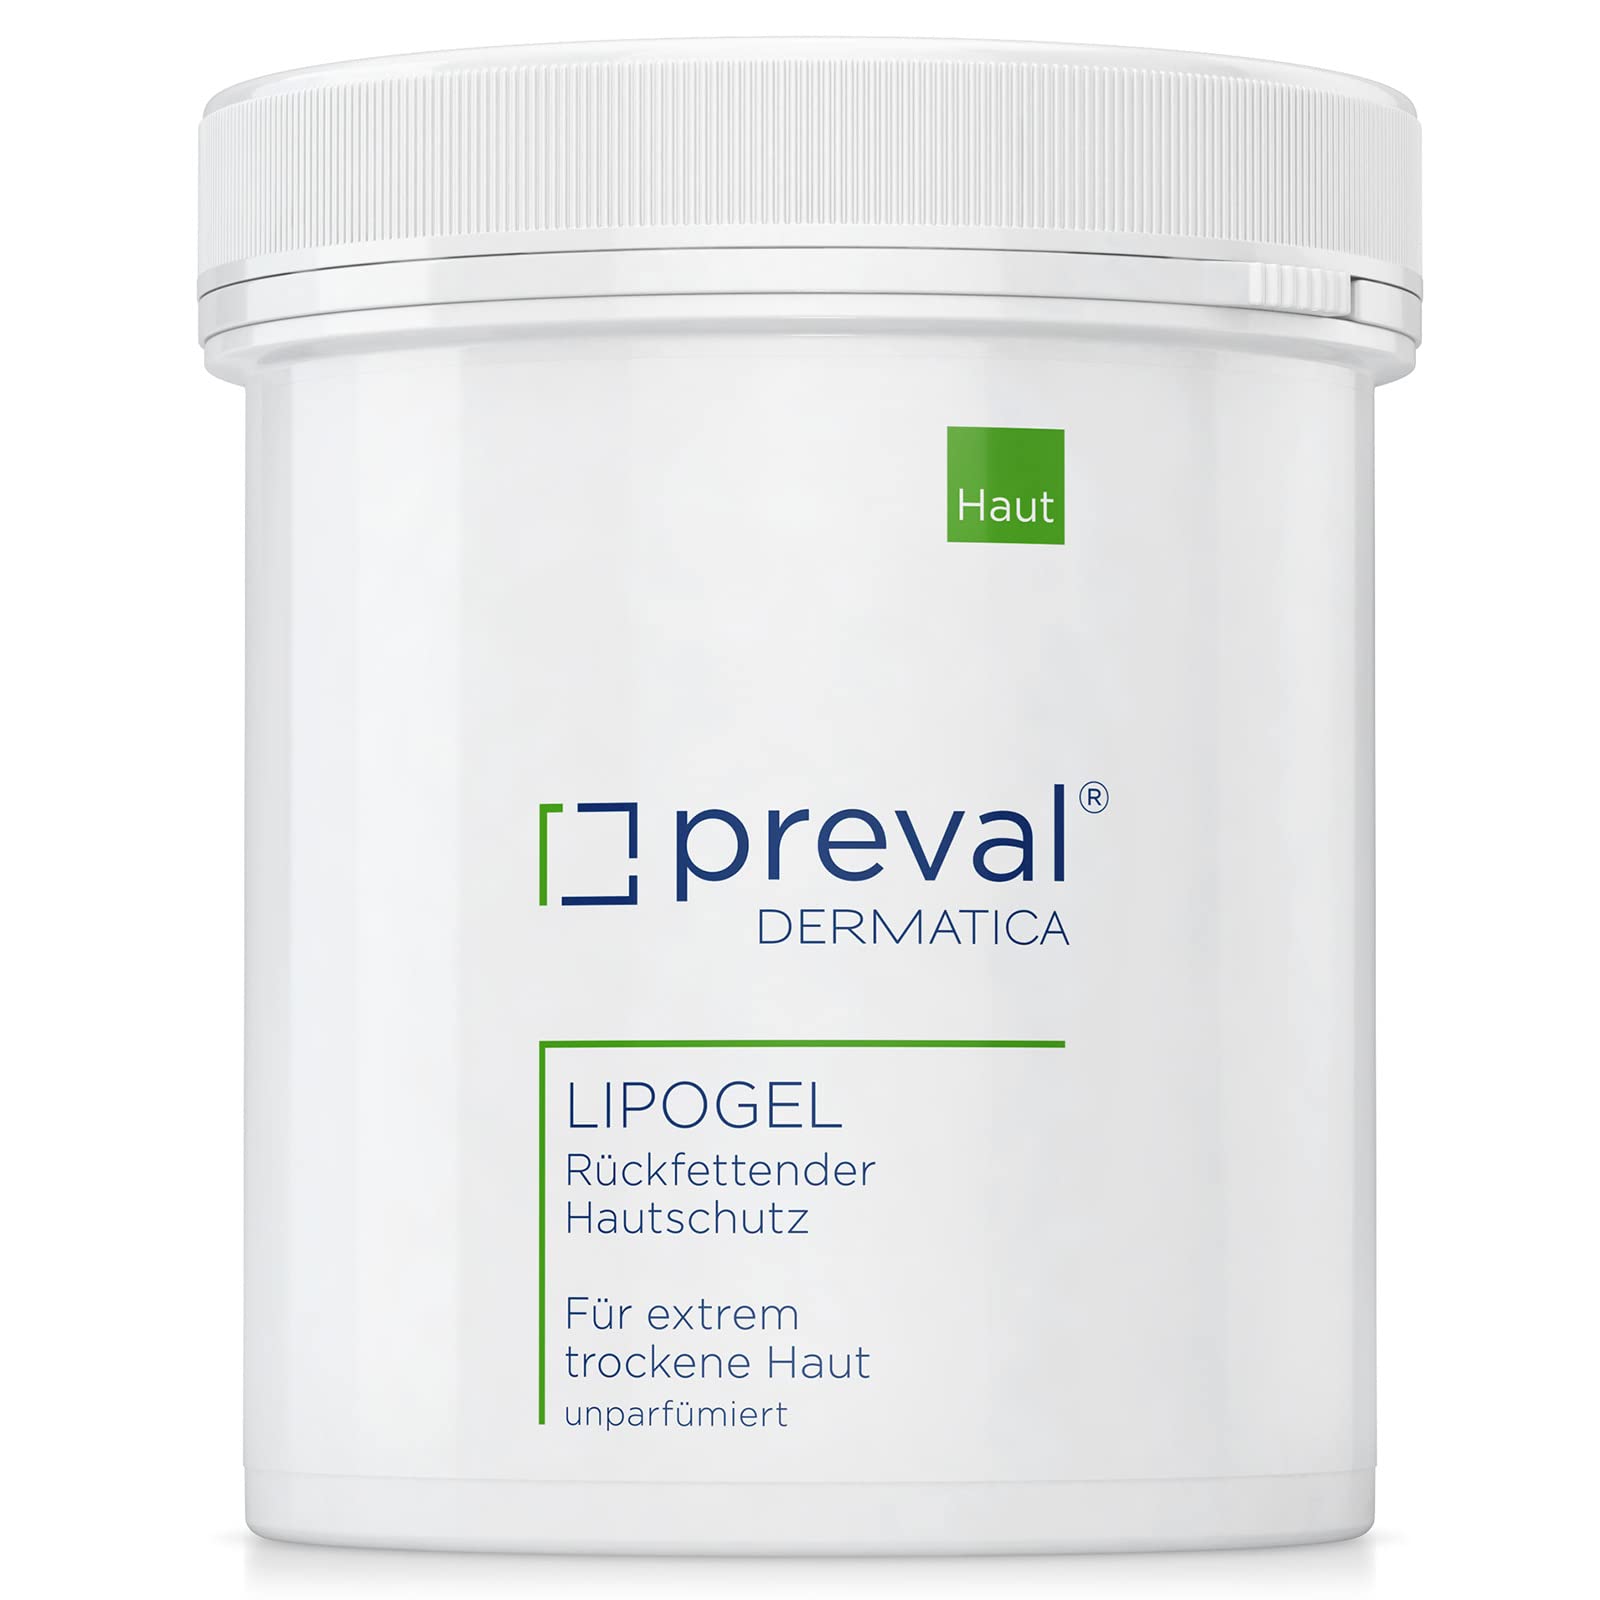 preval® LIPOGEL | Handcreme 400 g | Rückfettender Haut- und Kälteschutz für extrem trockene Haut